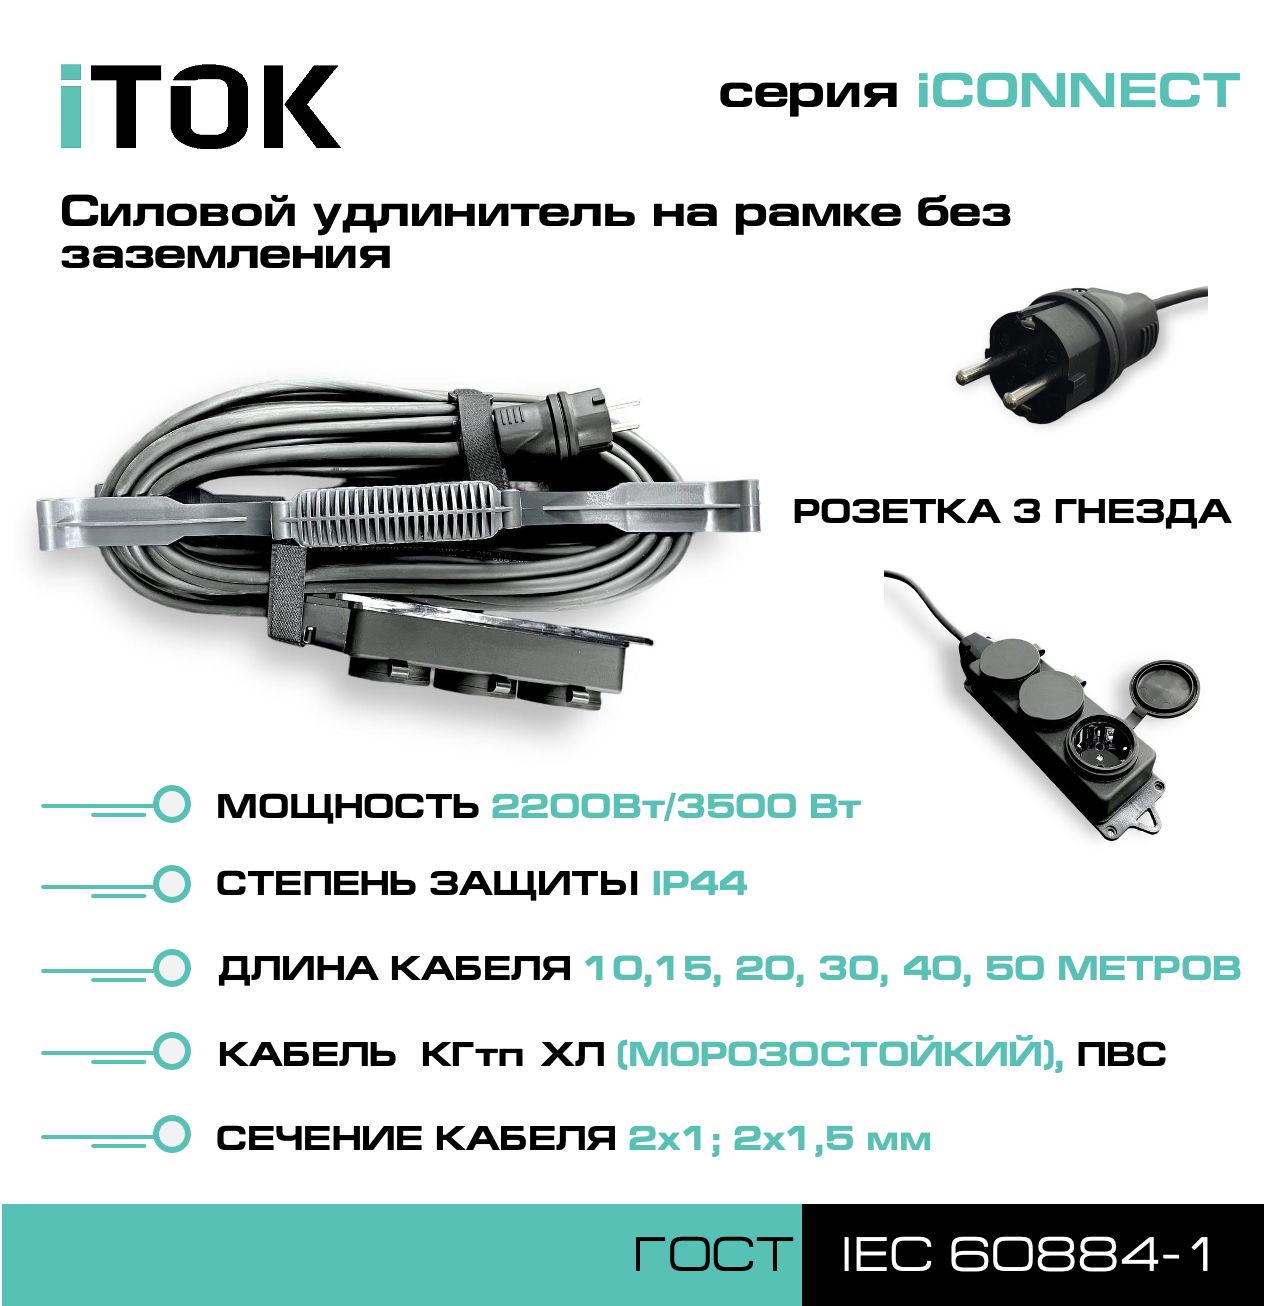 Удлинитель на рамке без земли серии iTOK iCONNECT КГтп-ХЛ 2х1,5 мм 3 гнезда IP44 40 м фигурный пазл в рамке